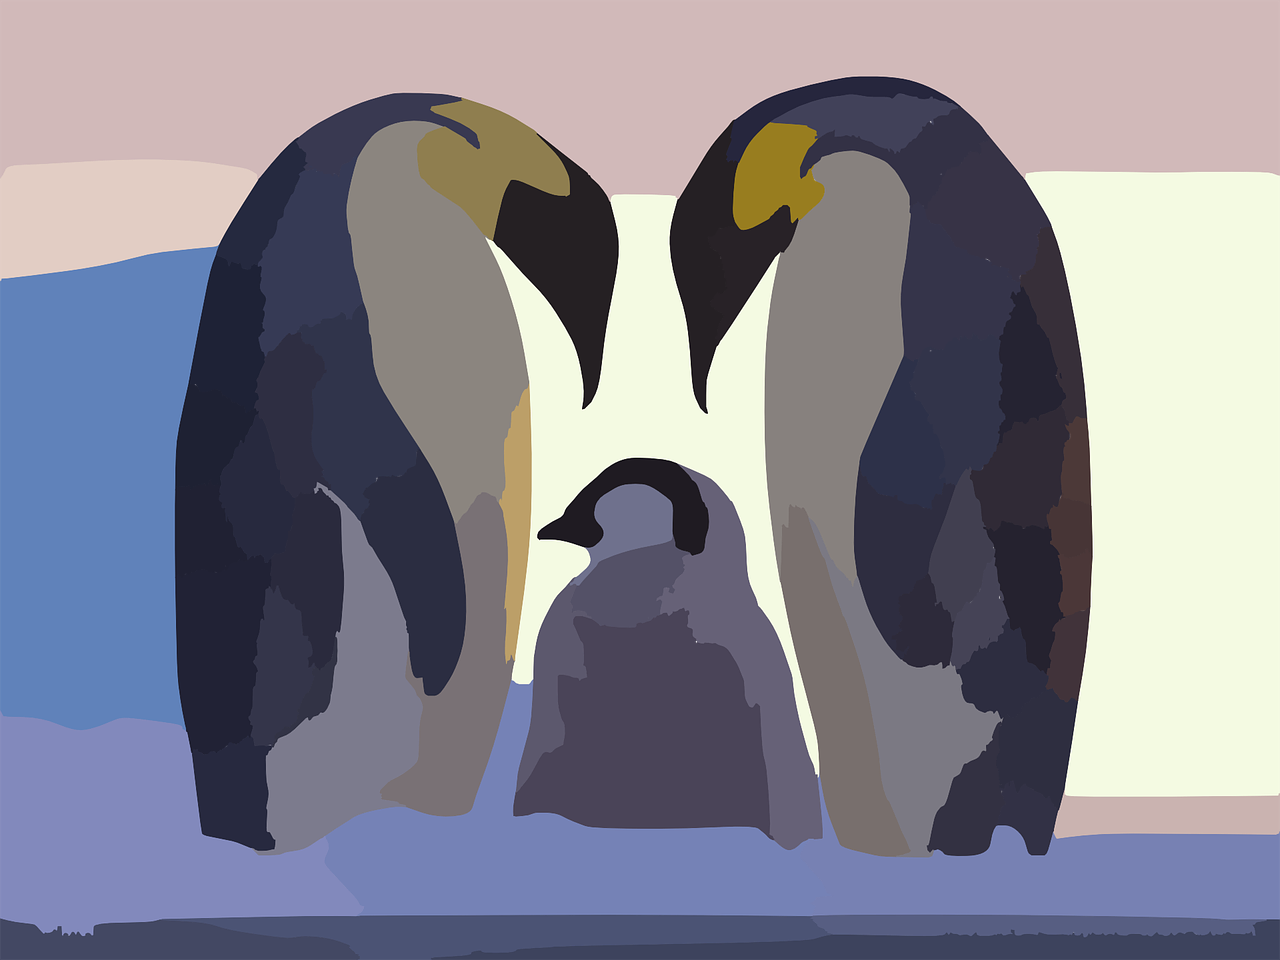 Pingvinas, Šeima, Tėvai, Vaikas, Trys, Skrydis Be Skrydžio, Paukščiai, Antarctica, Pietinis Pusrutulis, Namai